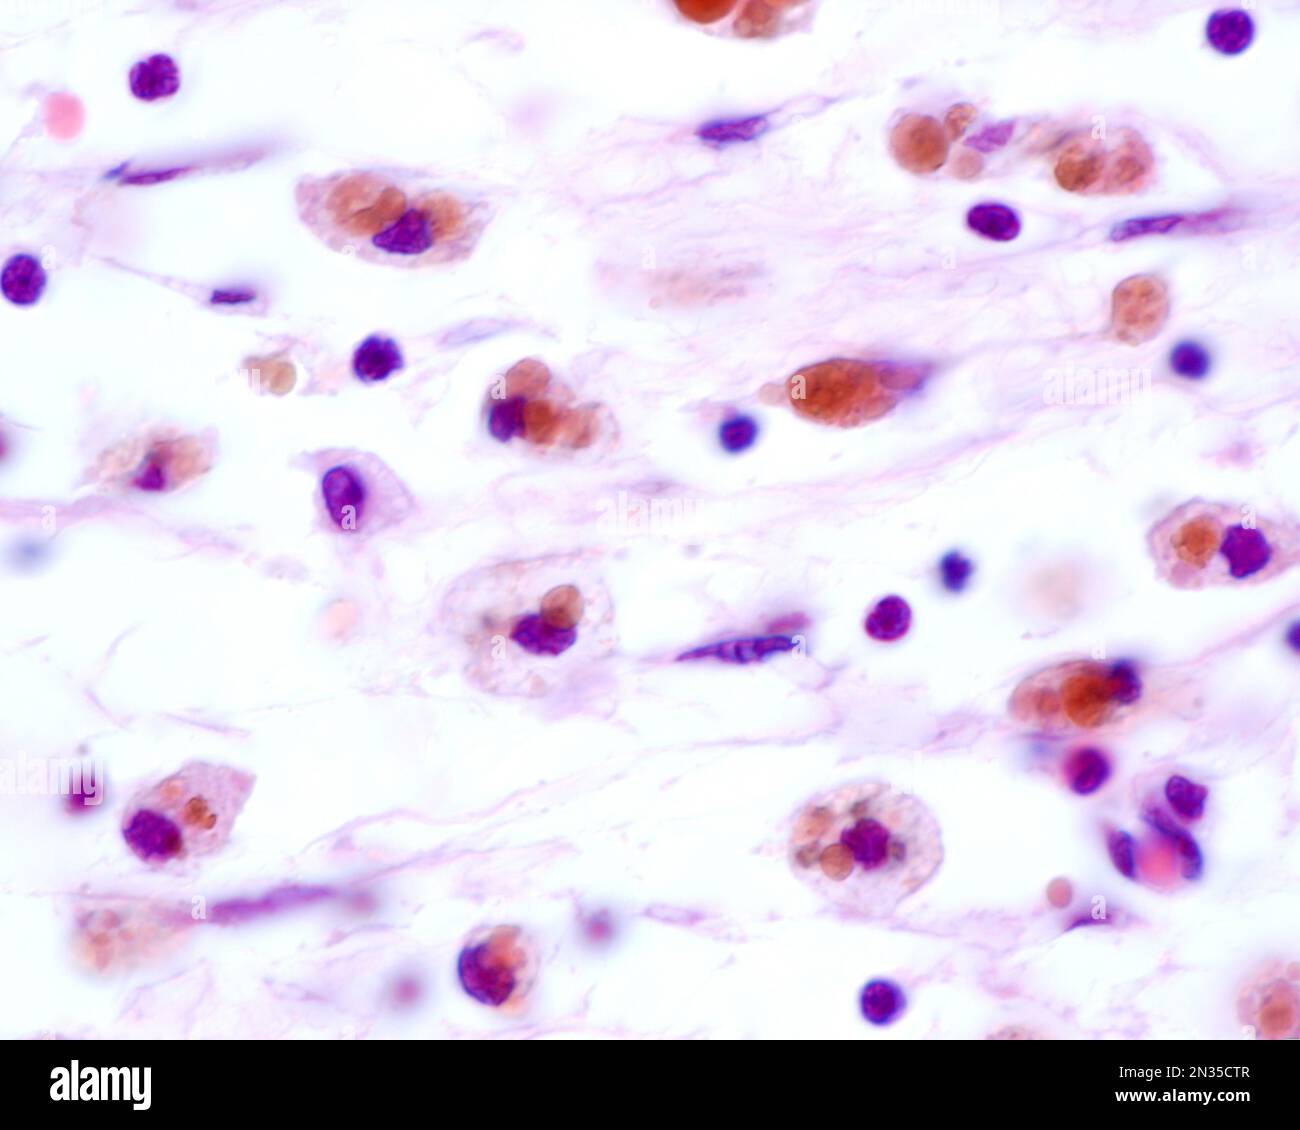 Les macrophages présentant de grandes inclusions brunes proviennent de la phagocytose des globules rouges après une hémorragie Banque D'Images